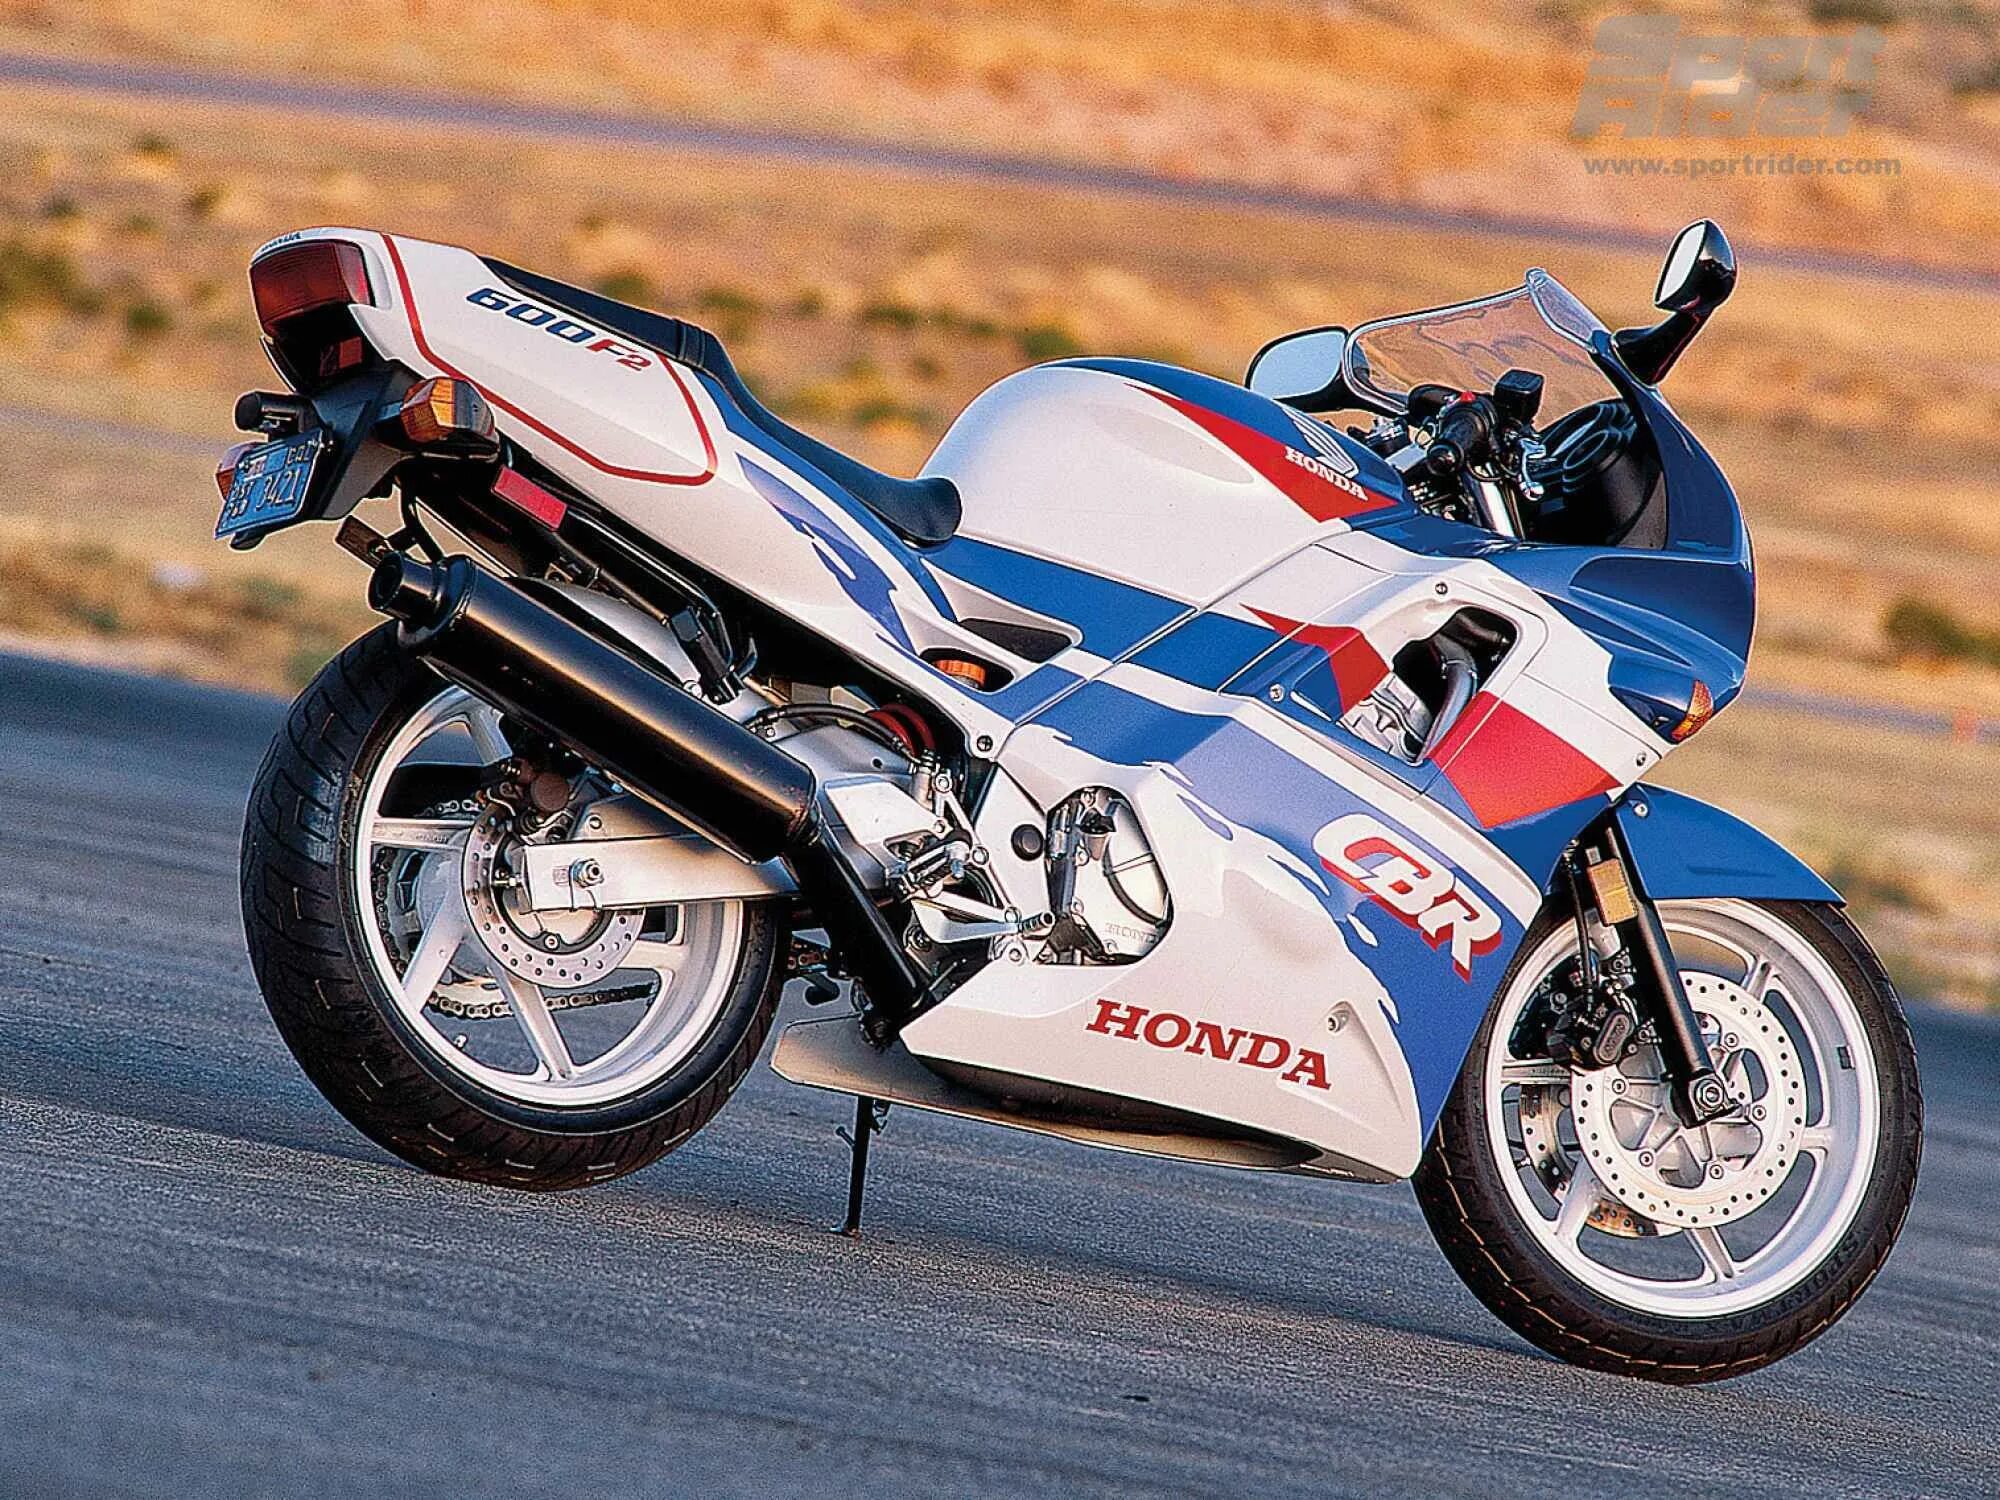 Honda CBR 600 f2. Хонда СБР 600 ф2. Honda CBR f2. Honda CBR 600 f2 1994.